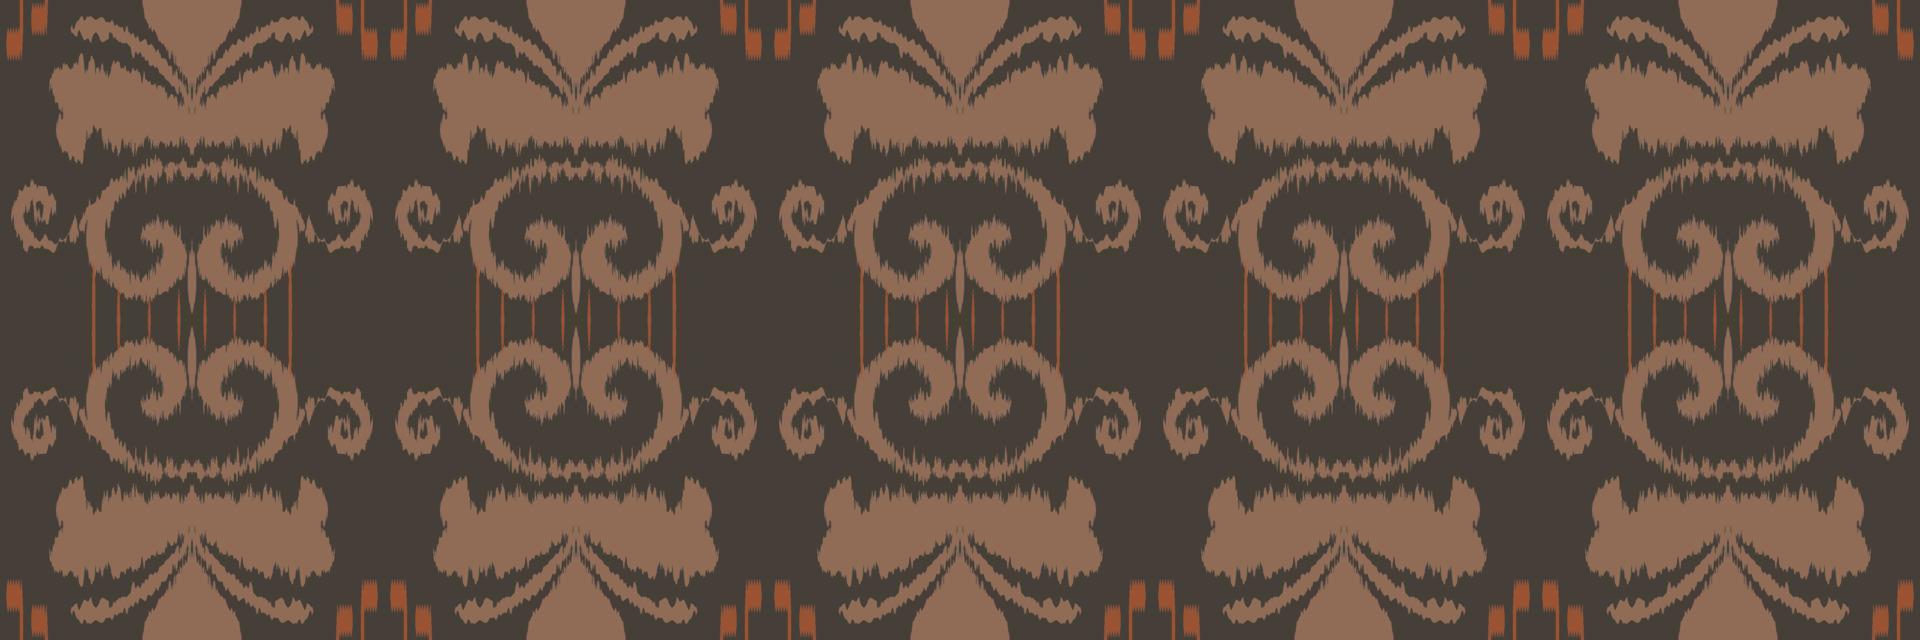 ikat imprime fondos tribales diseño oriental étnico tradicional geométrico para el fondo. bordado popular, indio, escandinavo, gitano, mexicano, alfombra africana, papel tapiz. vector